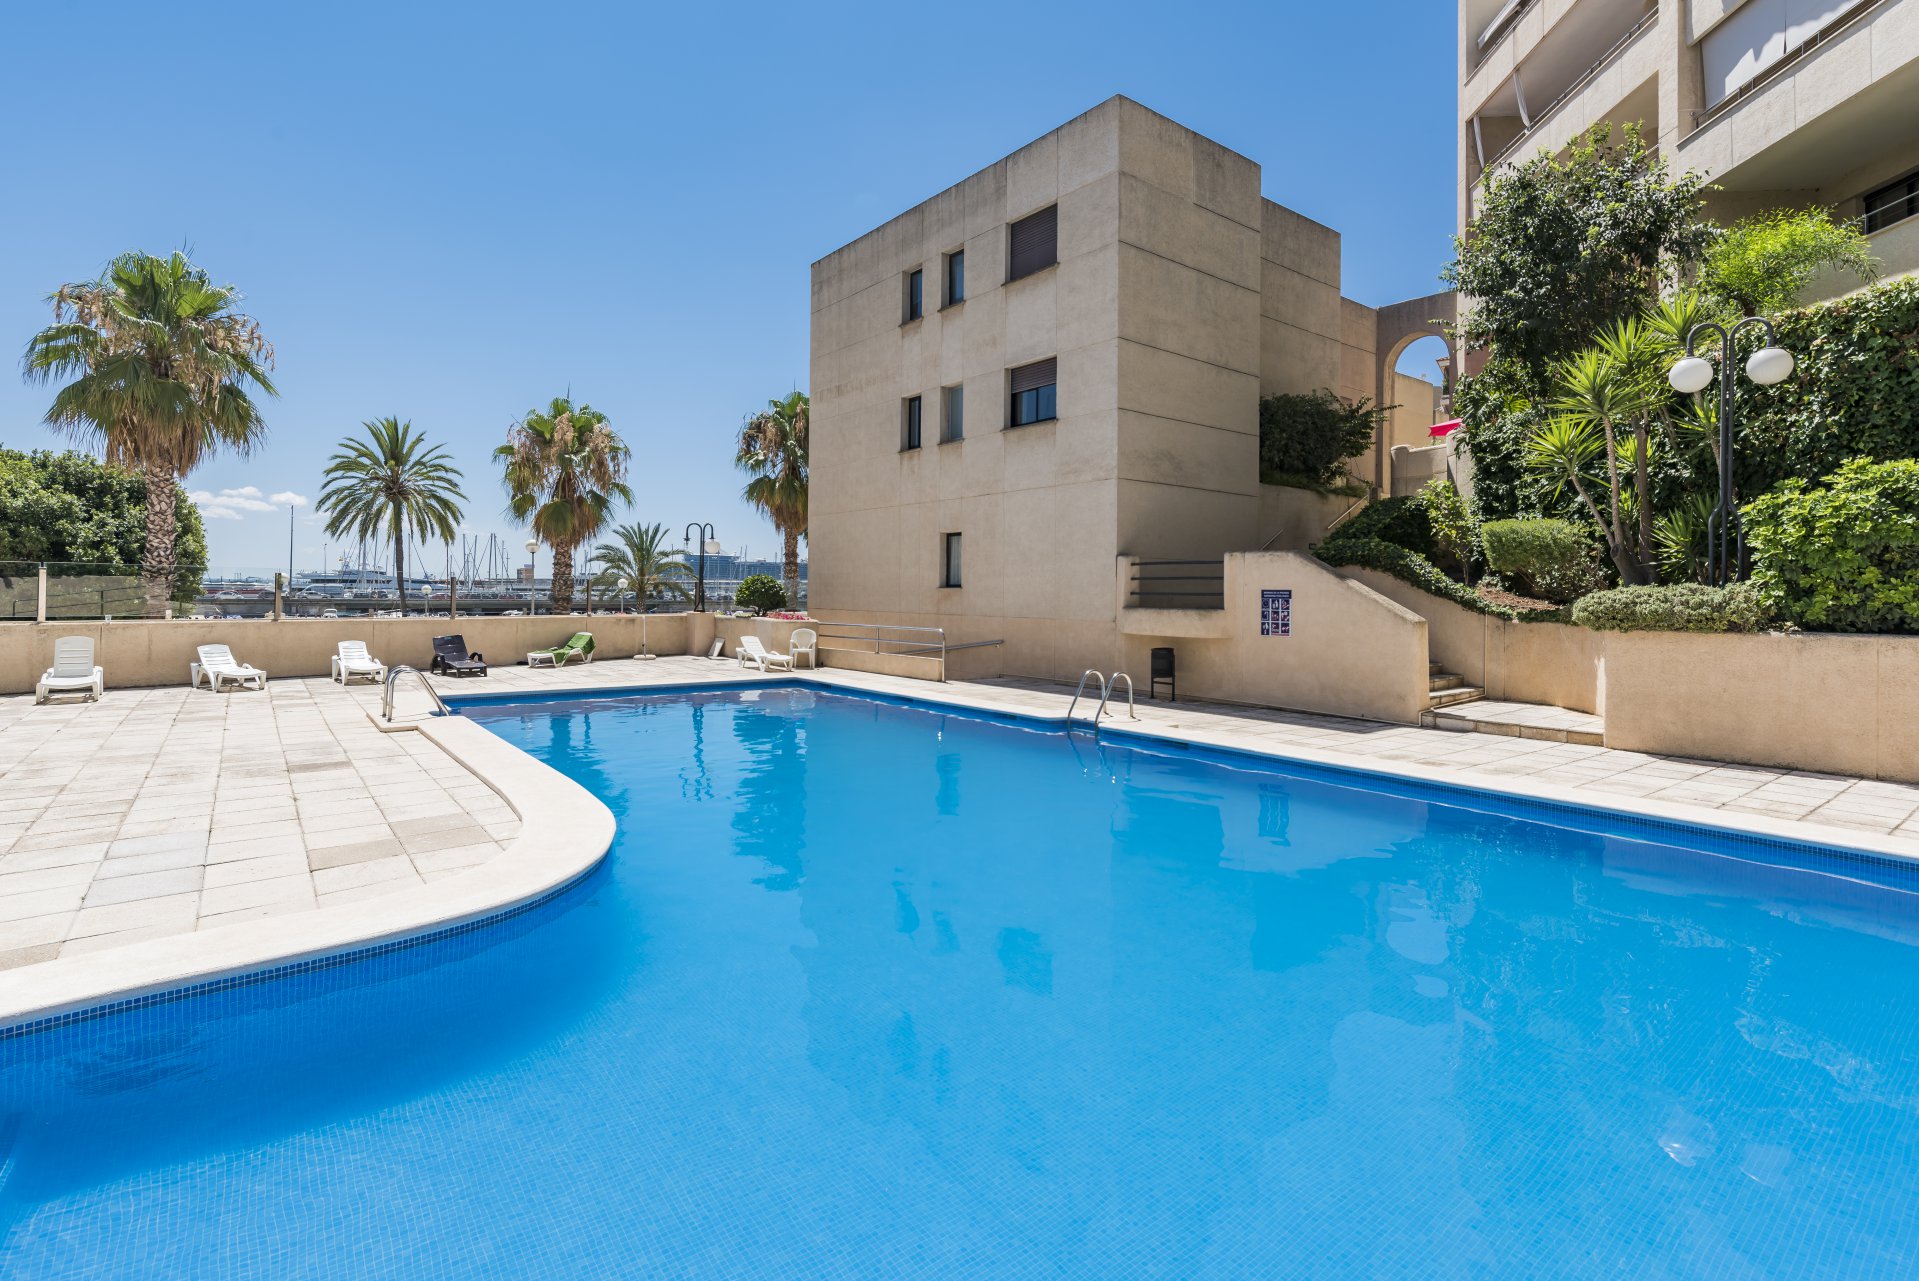 Ad Sale Apartment Palma de Mallorca (07015) ref:V0144PM